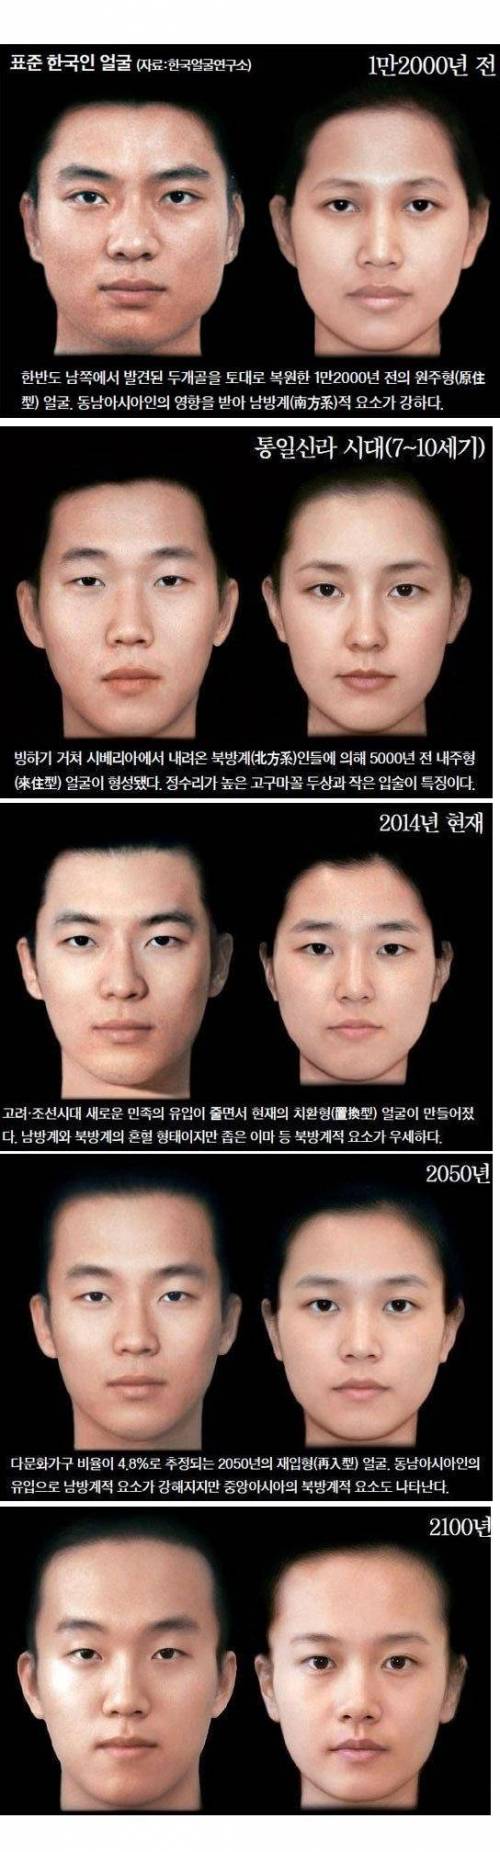 표준 한국인 얼굴 변화